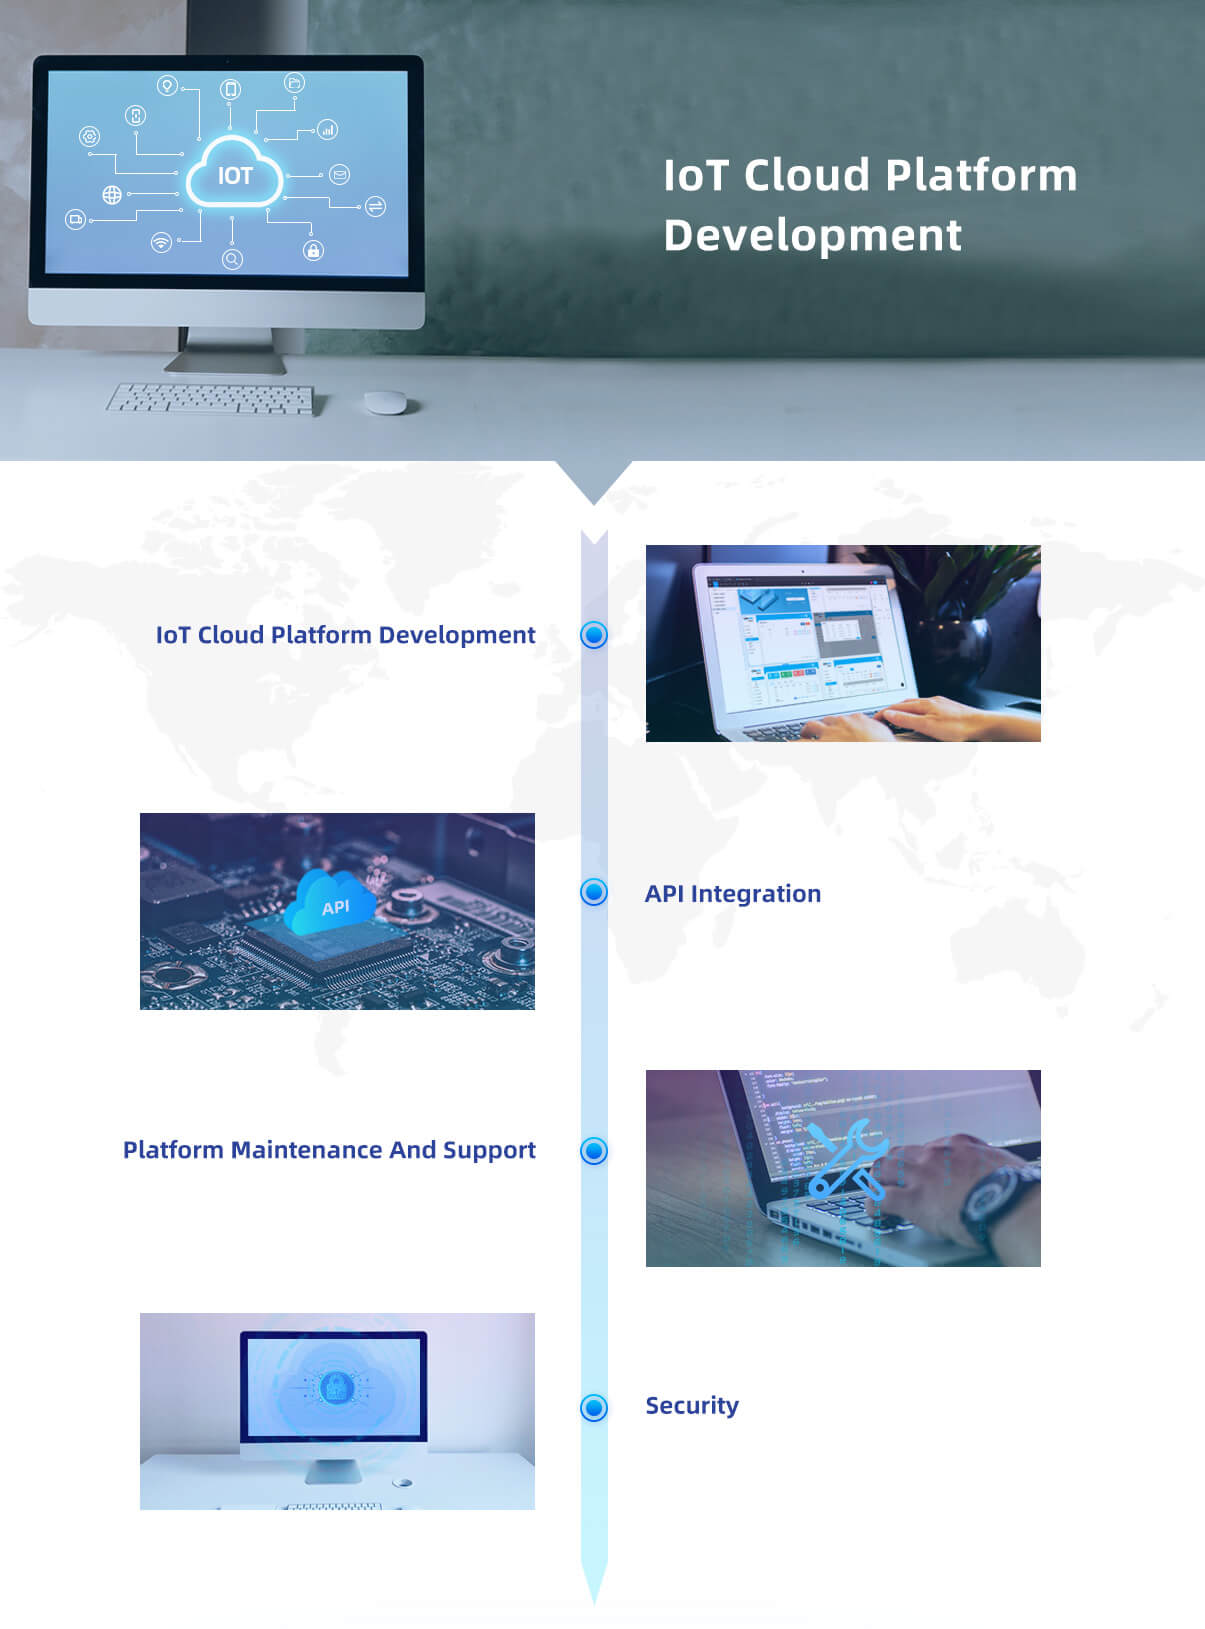 Разработка облачной платформы IoT